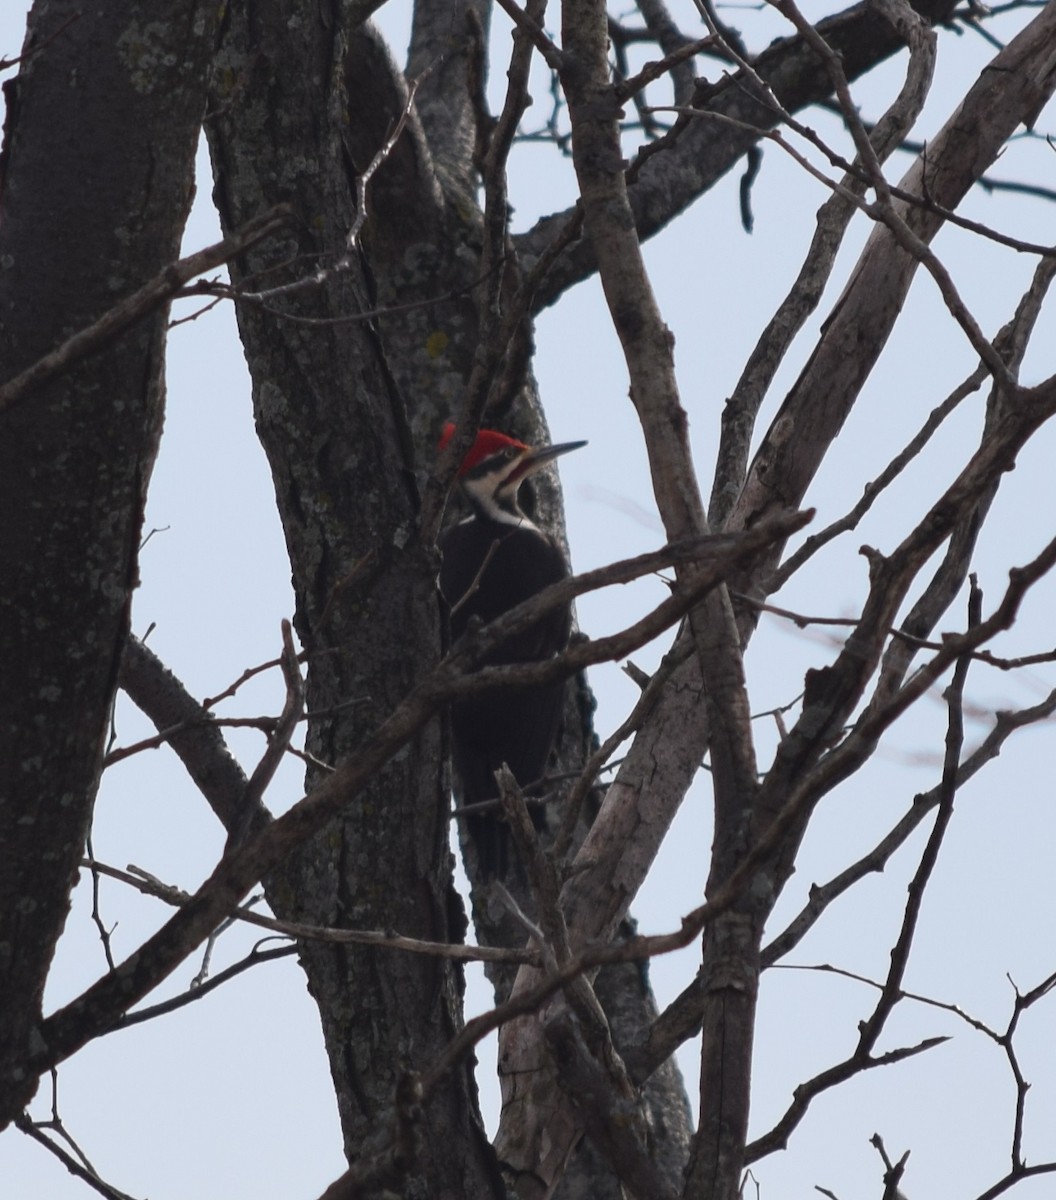 Pileated Woodpecker - Zach Skubiszewski